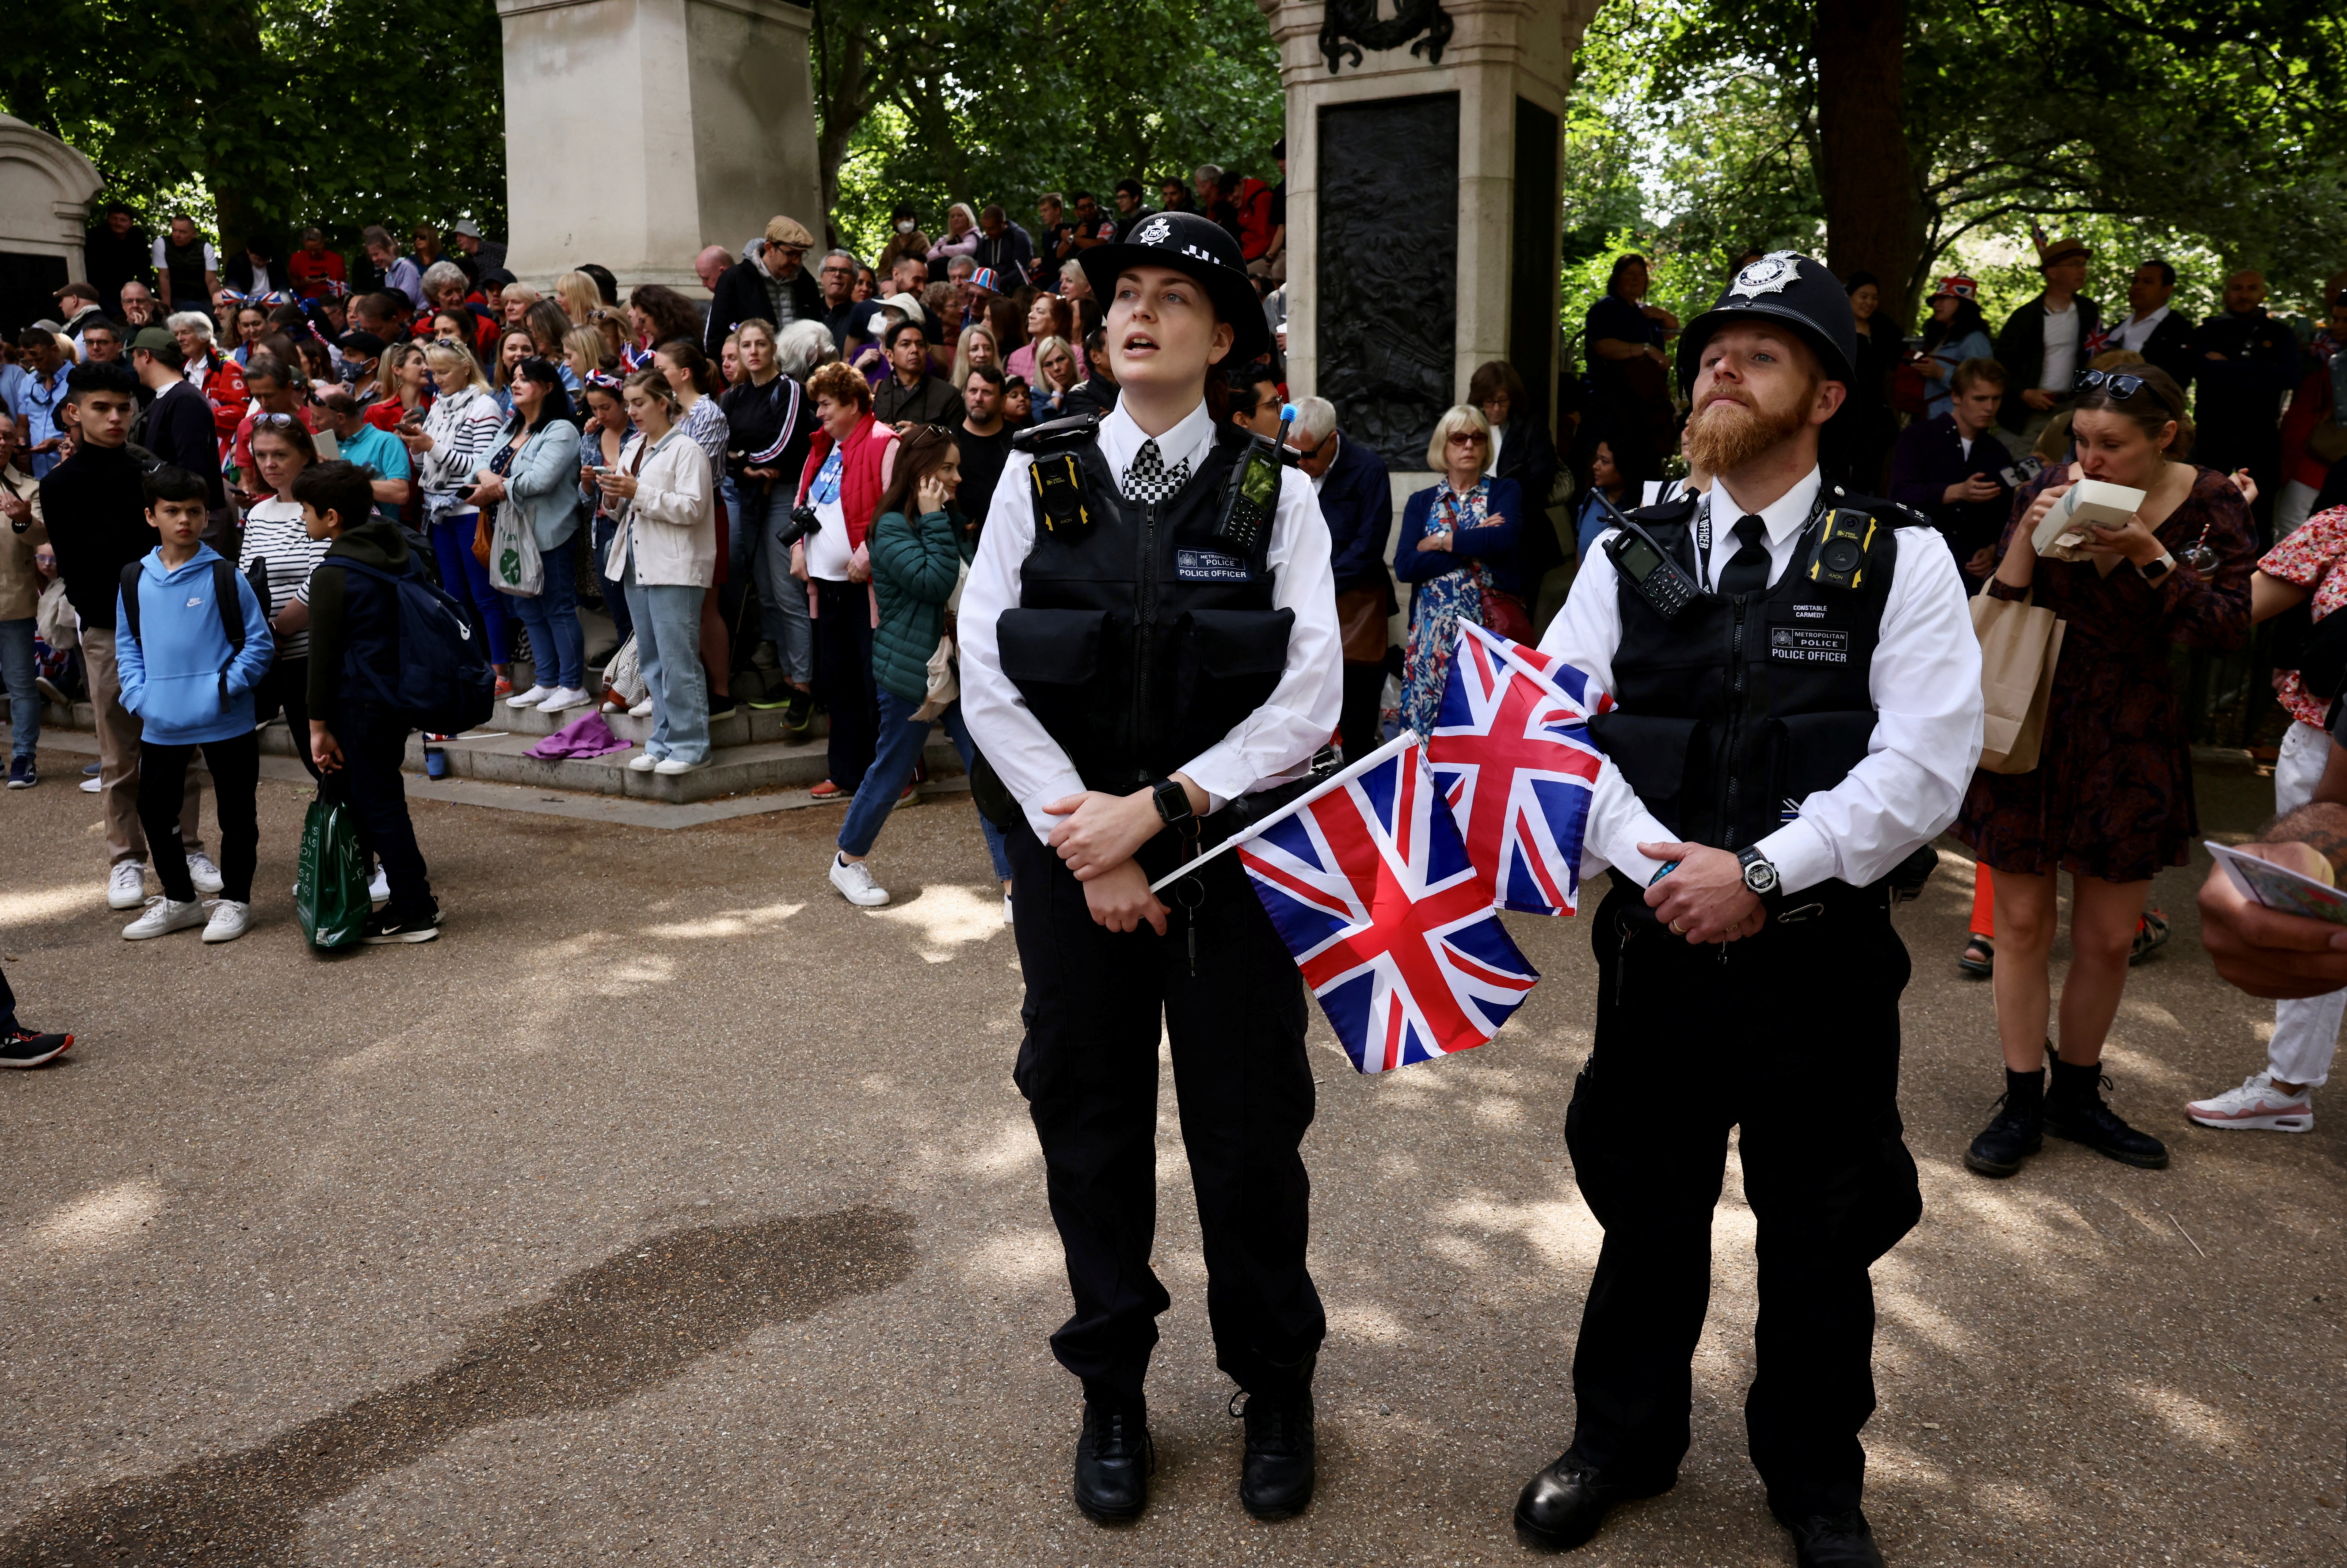 Gli ufficiali di polizia portano le bandiere dell'Union Jack vicino a Buckingham Palace durante le celebrazioni del Queen's Platinum Jubilee, a Londra, in Gran Bretagna, il 2 giugno 2022. REUTERS/Kevin Coombs